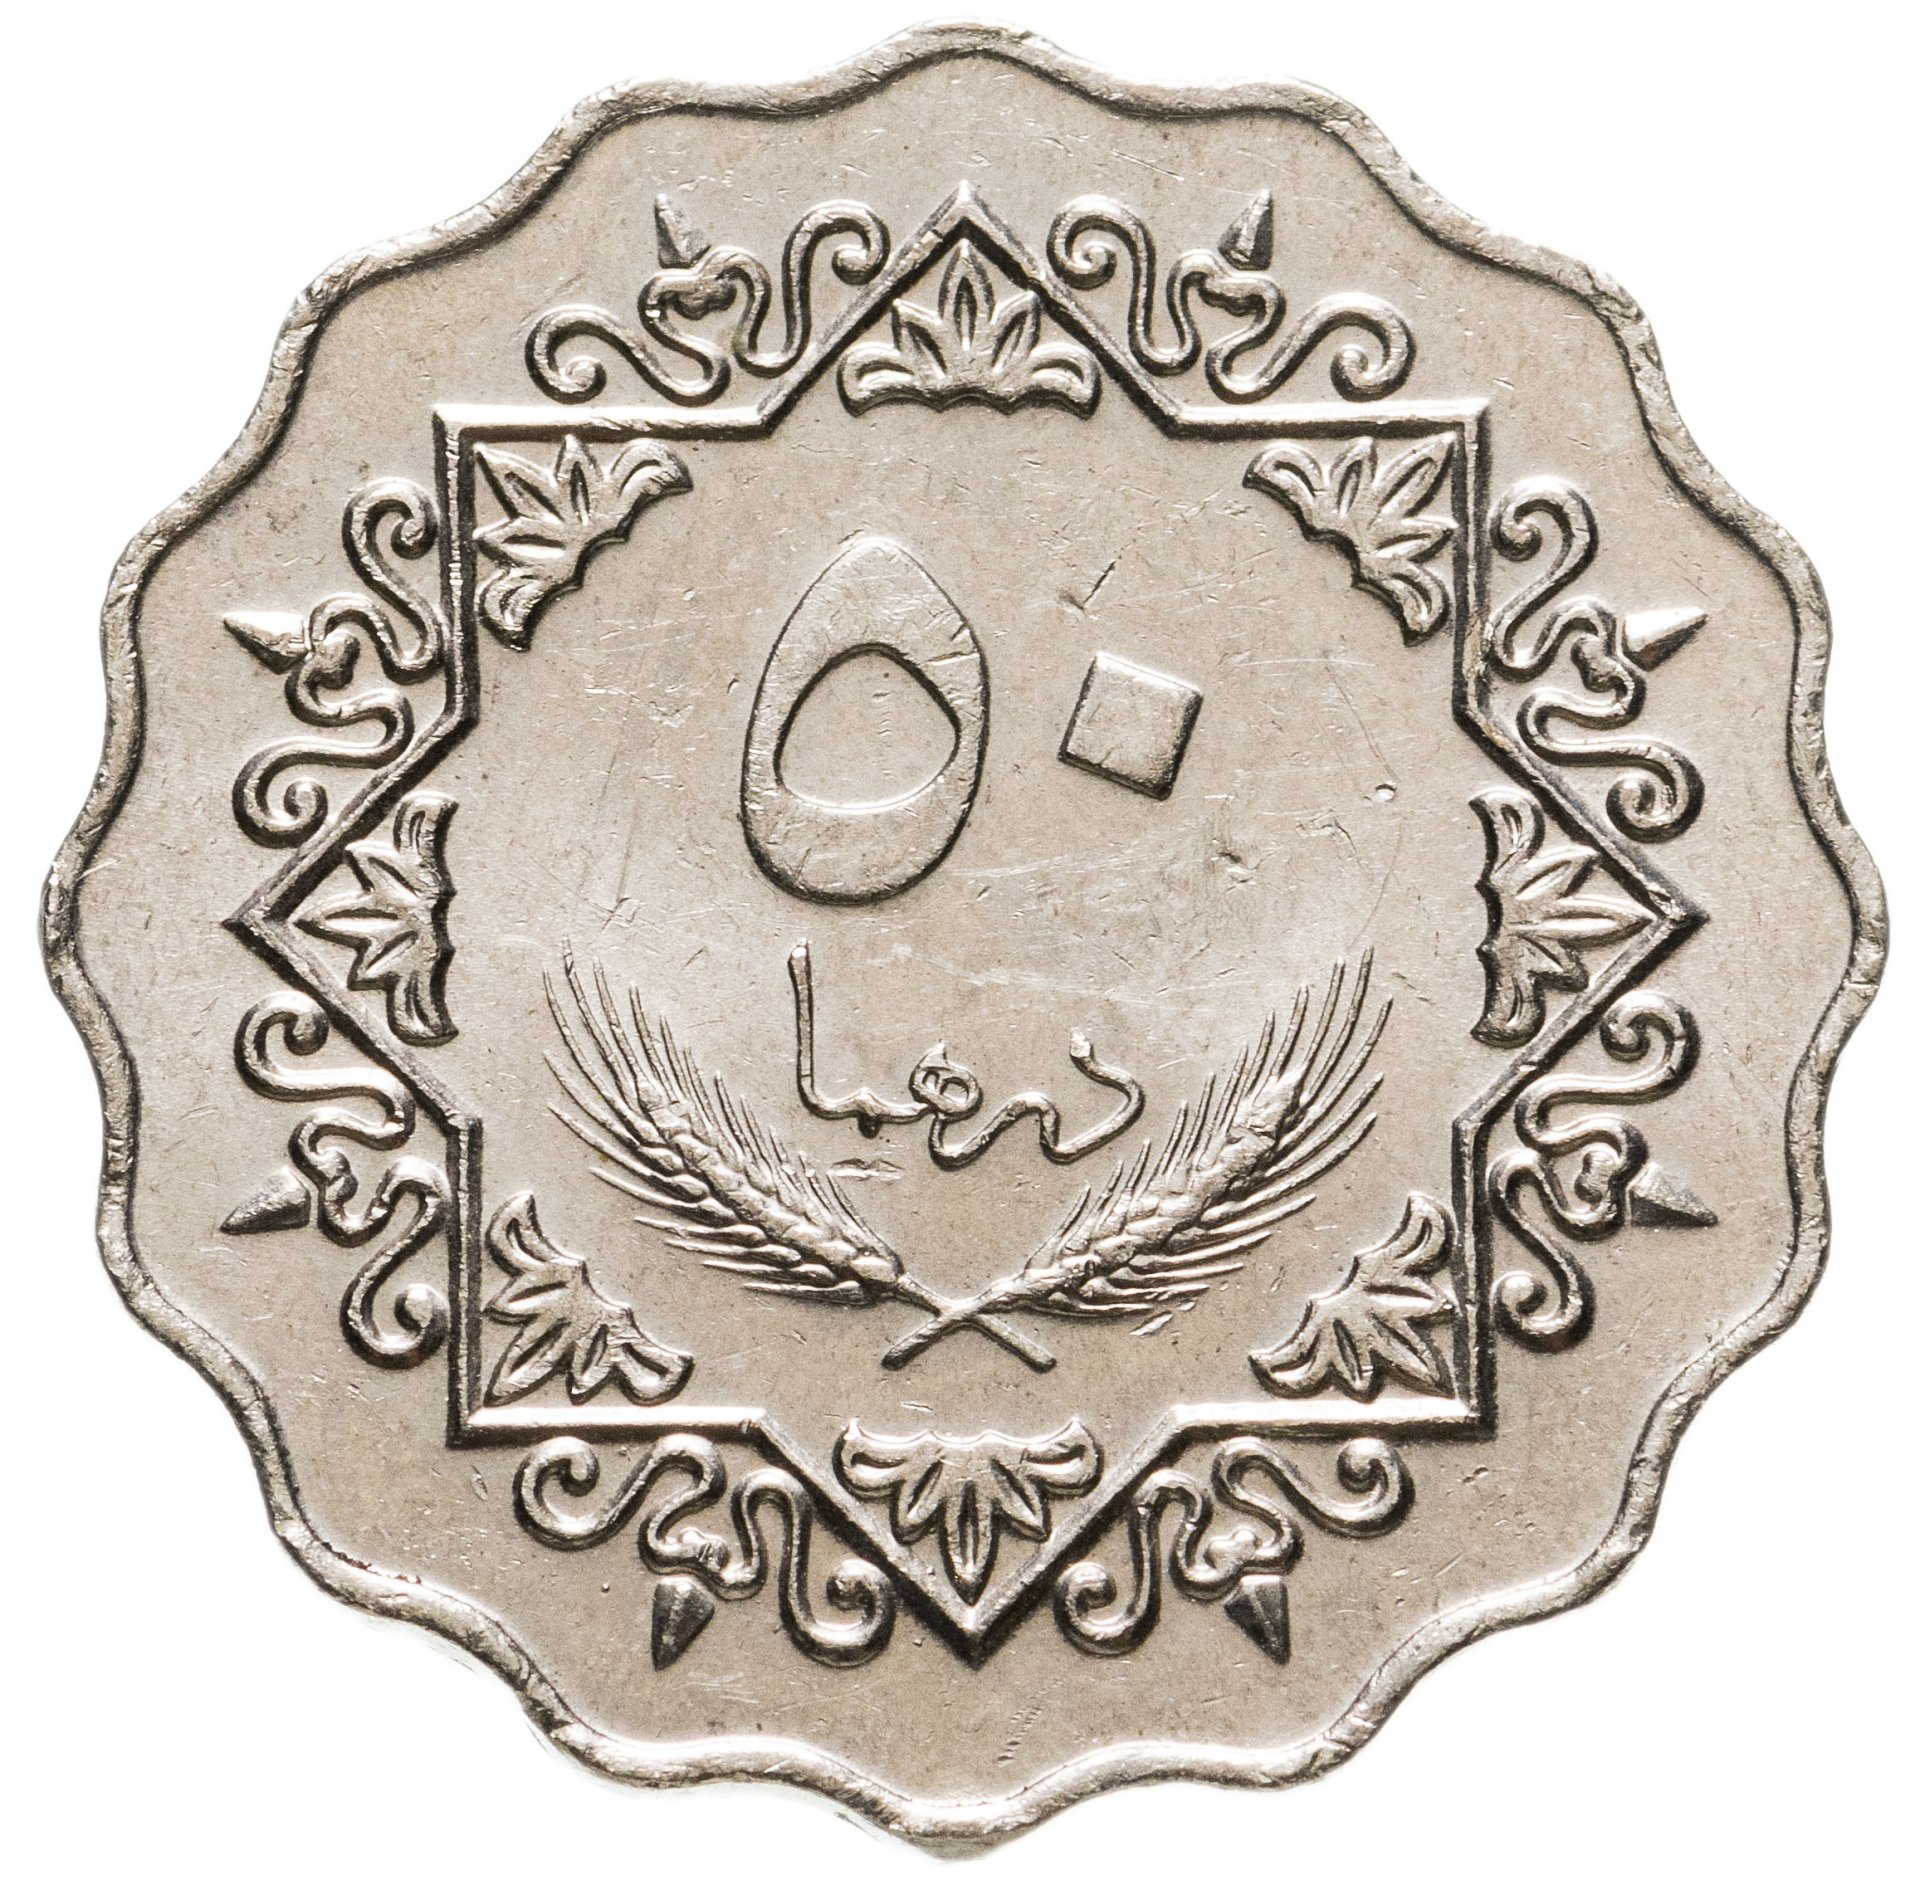 9 дирхам. Ливия 50 дирхамов 1979. Монета с арабской вязью 50. Монеты ливийской Джамахирии. Старинные арабские монеты.